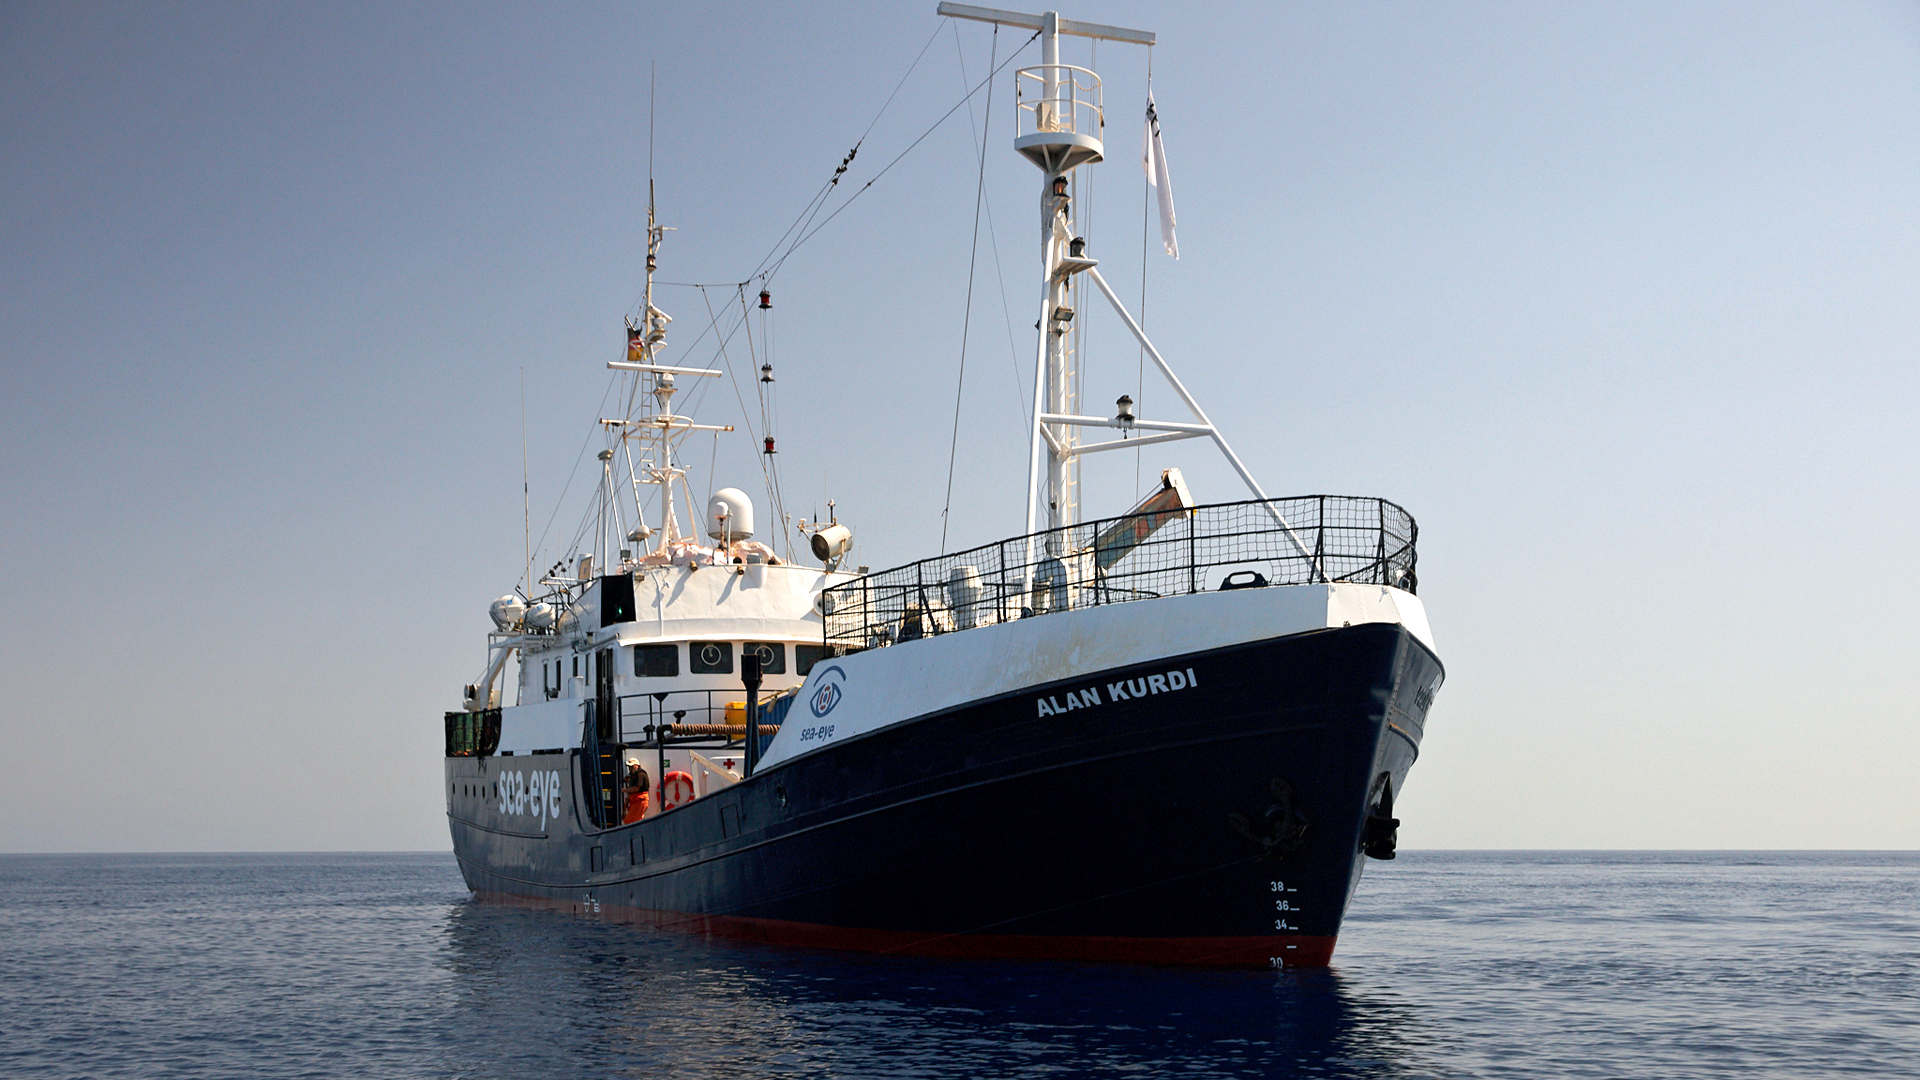 Rettungsschiff Alan Kurdi fährt im Mittelmeer | Bildquelle: SEA-EYE